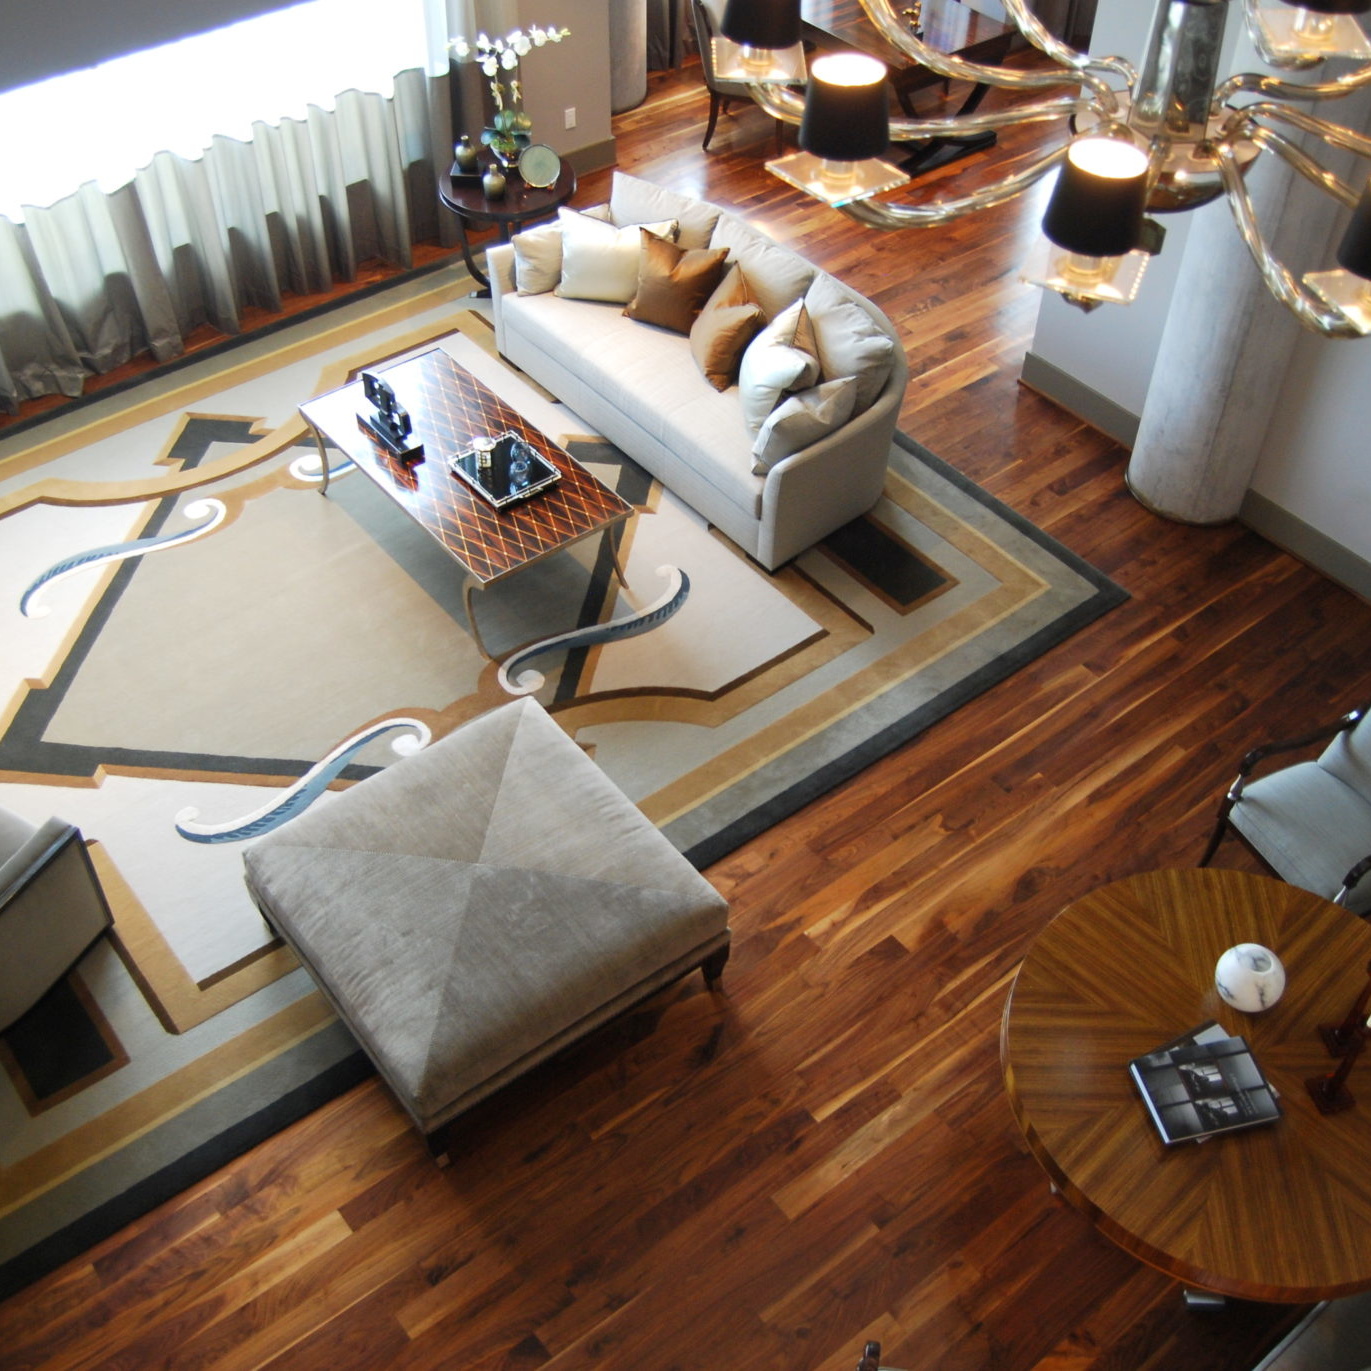 Aerial view of a living room interior design